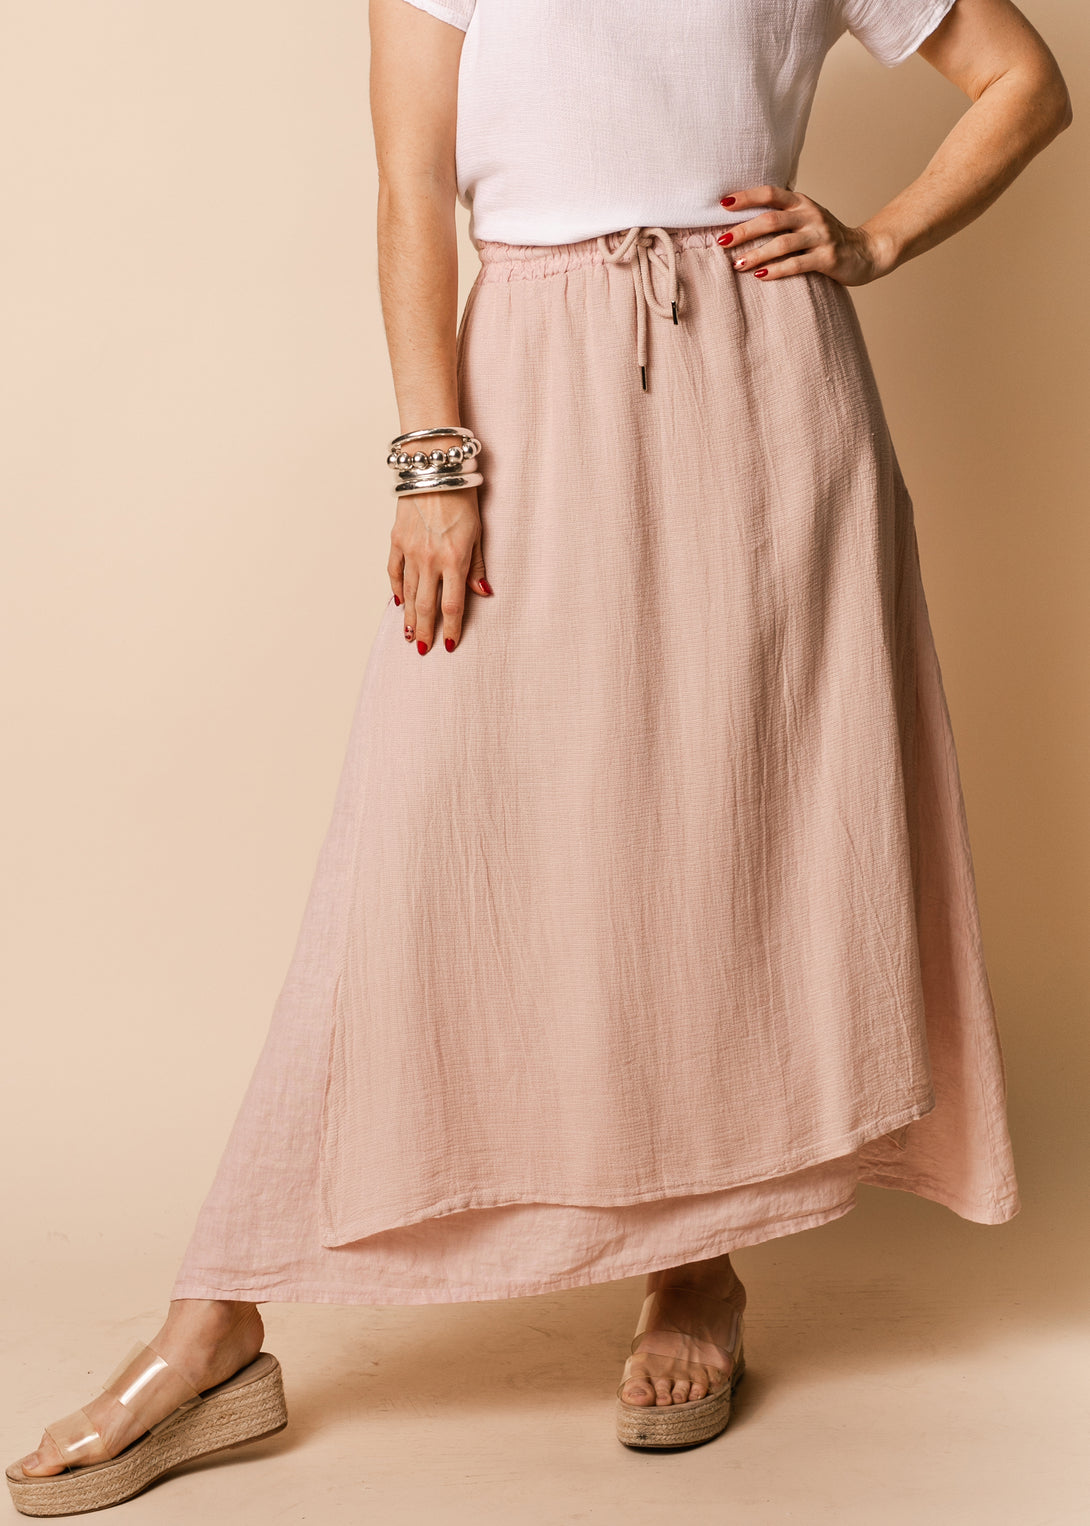 Livy Linen Blend Skirt in Blush - Imagine Fashion